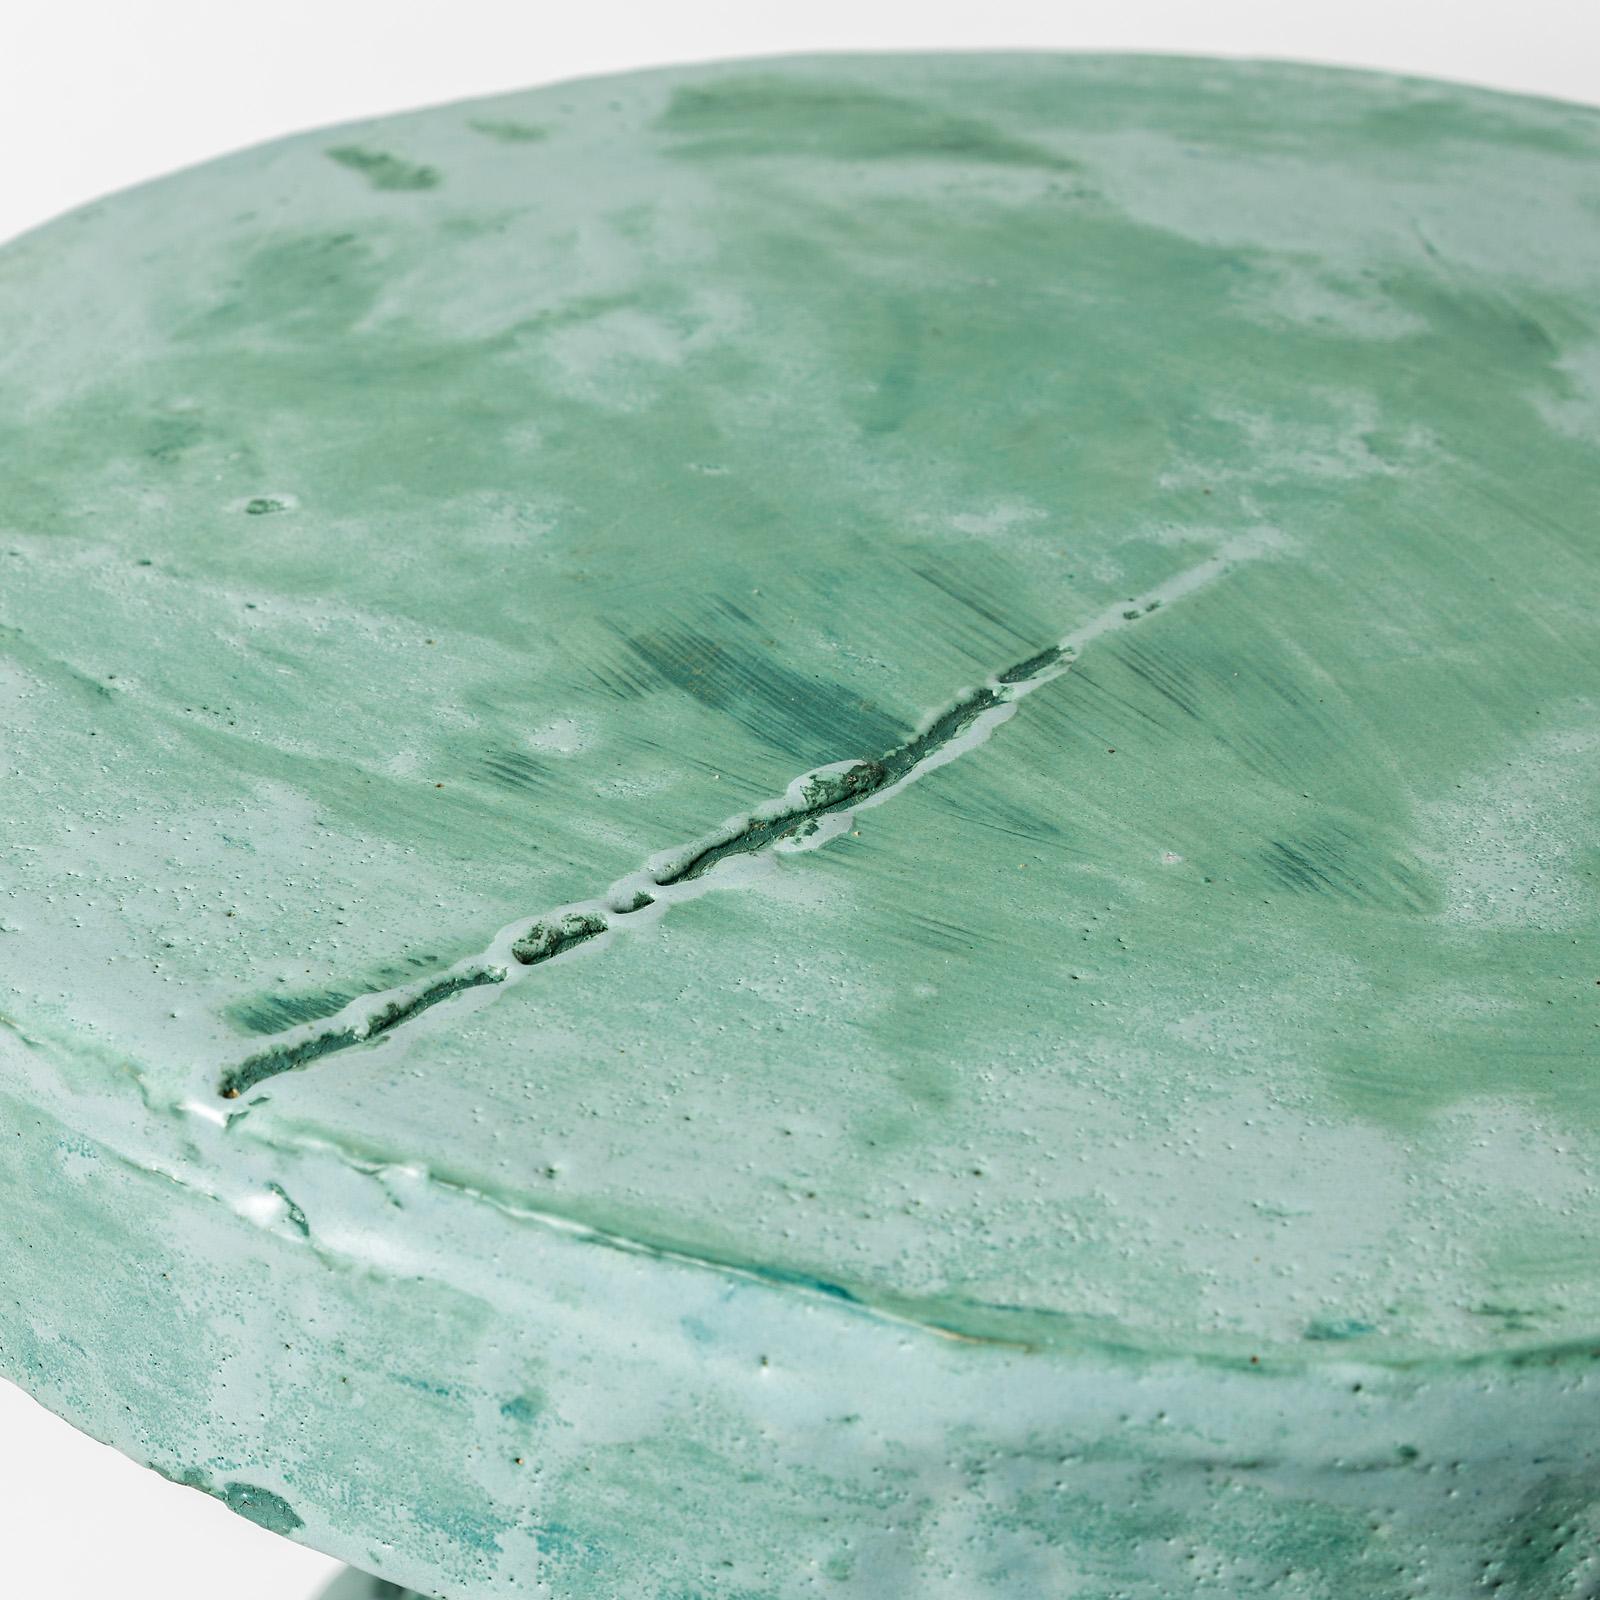 Ein Keramiktisch von Patrick Crulis mit grüner Glasur.
Perfekter Originalzustand.
Einzigartiges Stück.
2021.